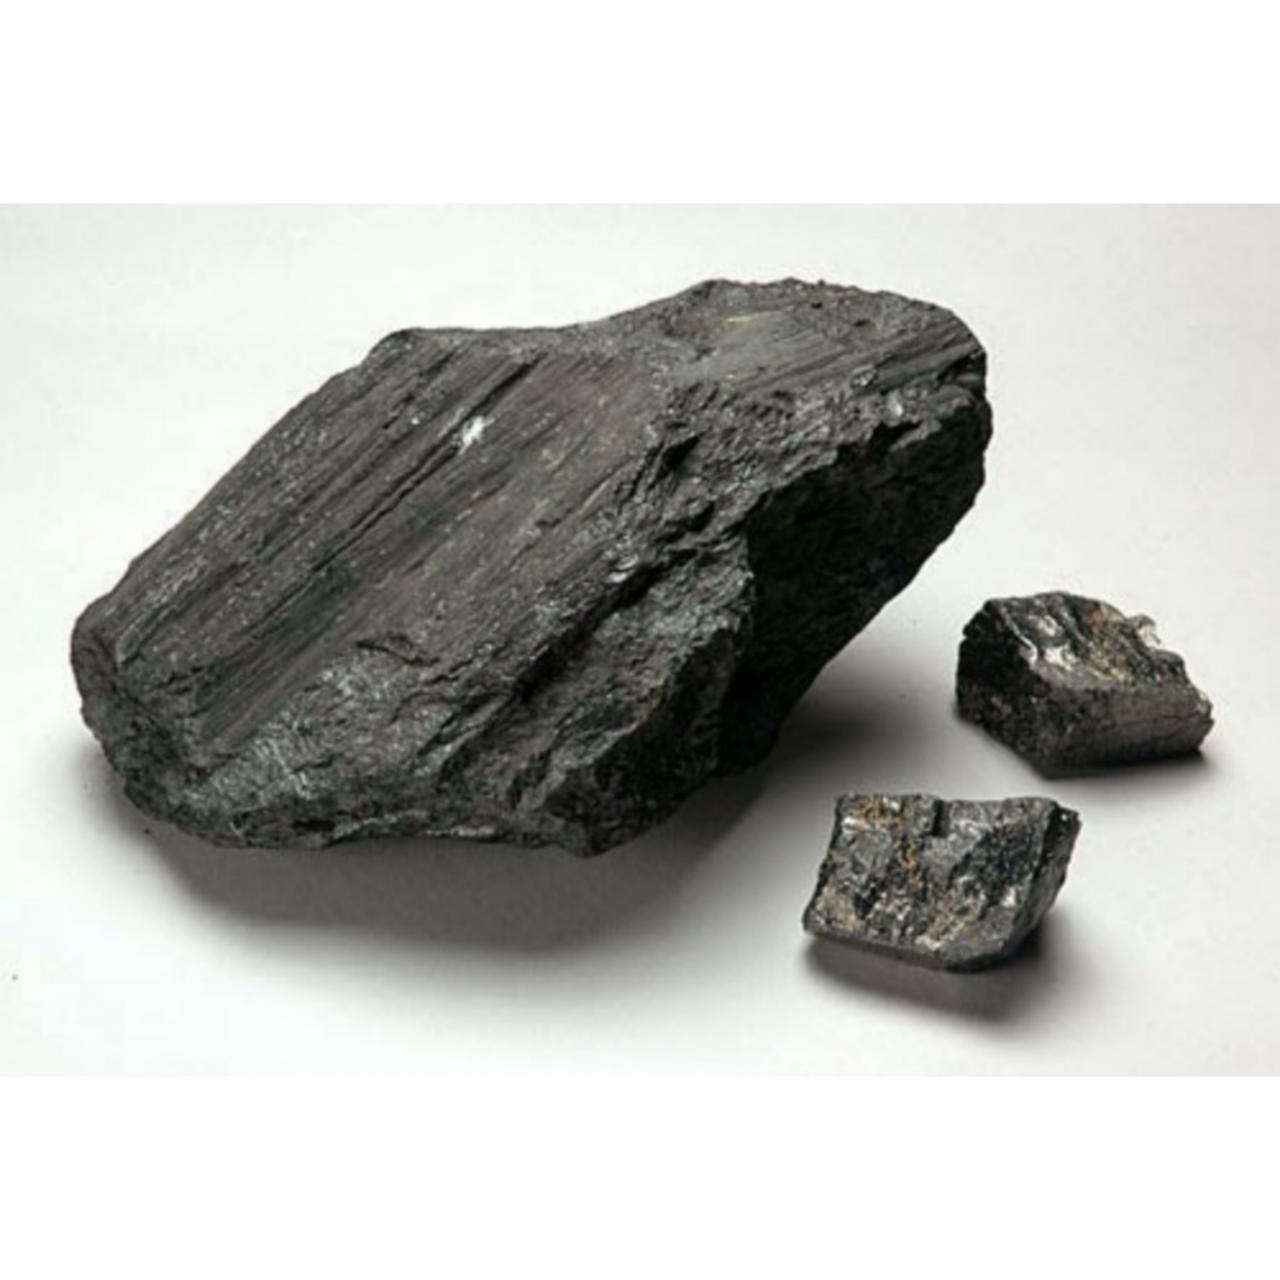 Каменный уголь полезное ископаемое. Каменный уголь антрацит. Уголь бурый каменный антрацит. Уголь битуминозный антрацит каменный. Уголь рисунок полезное ископаемое